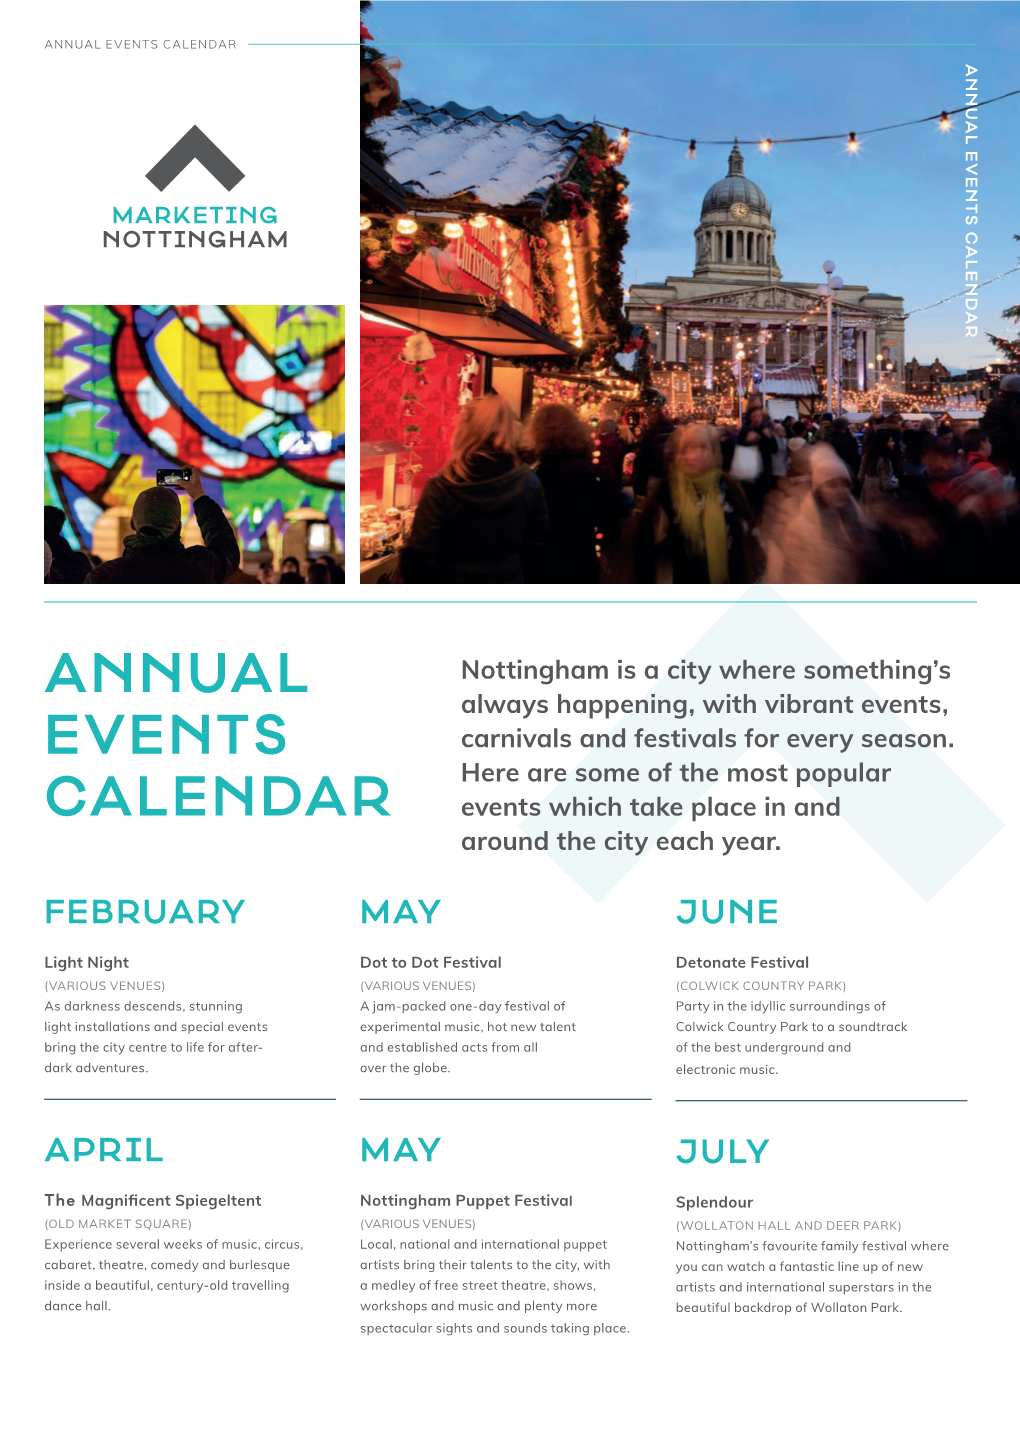 Annual Events Calendar Annual Events Calendar